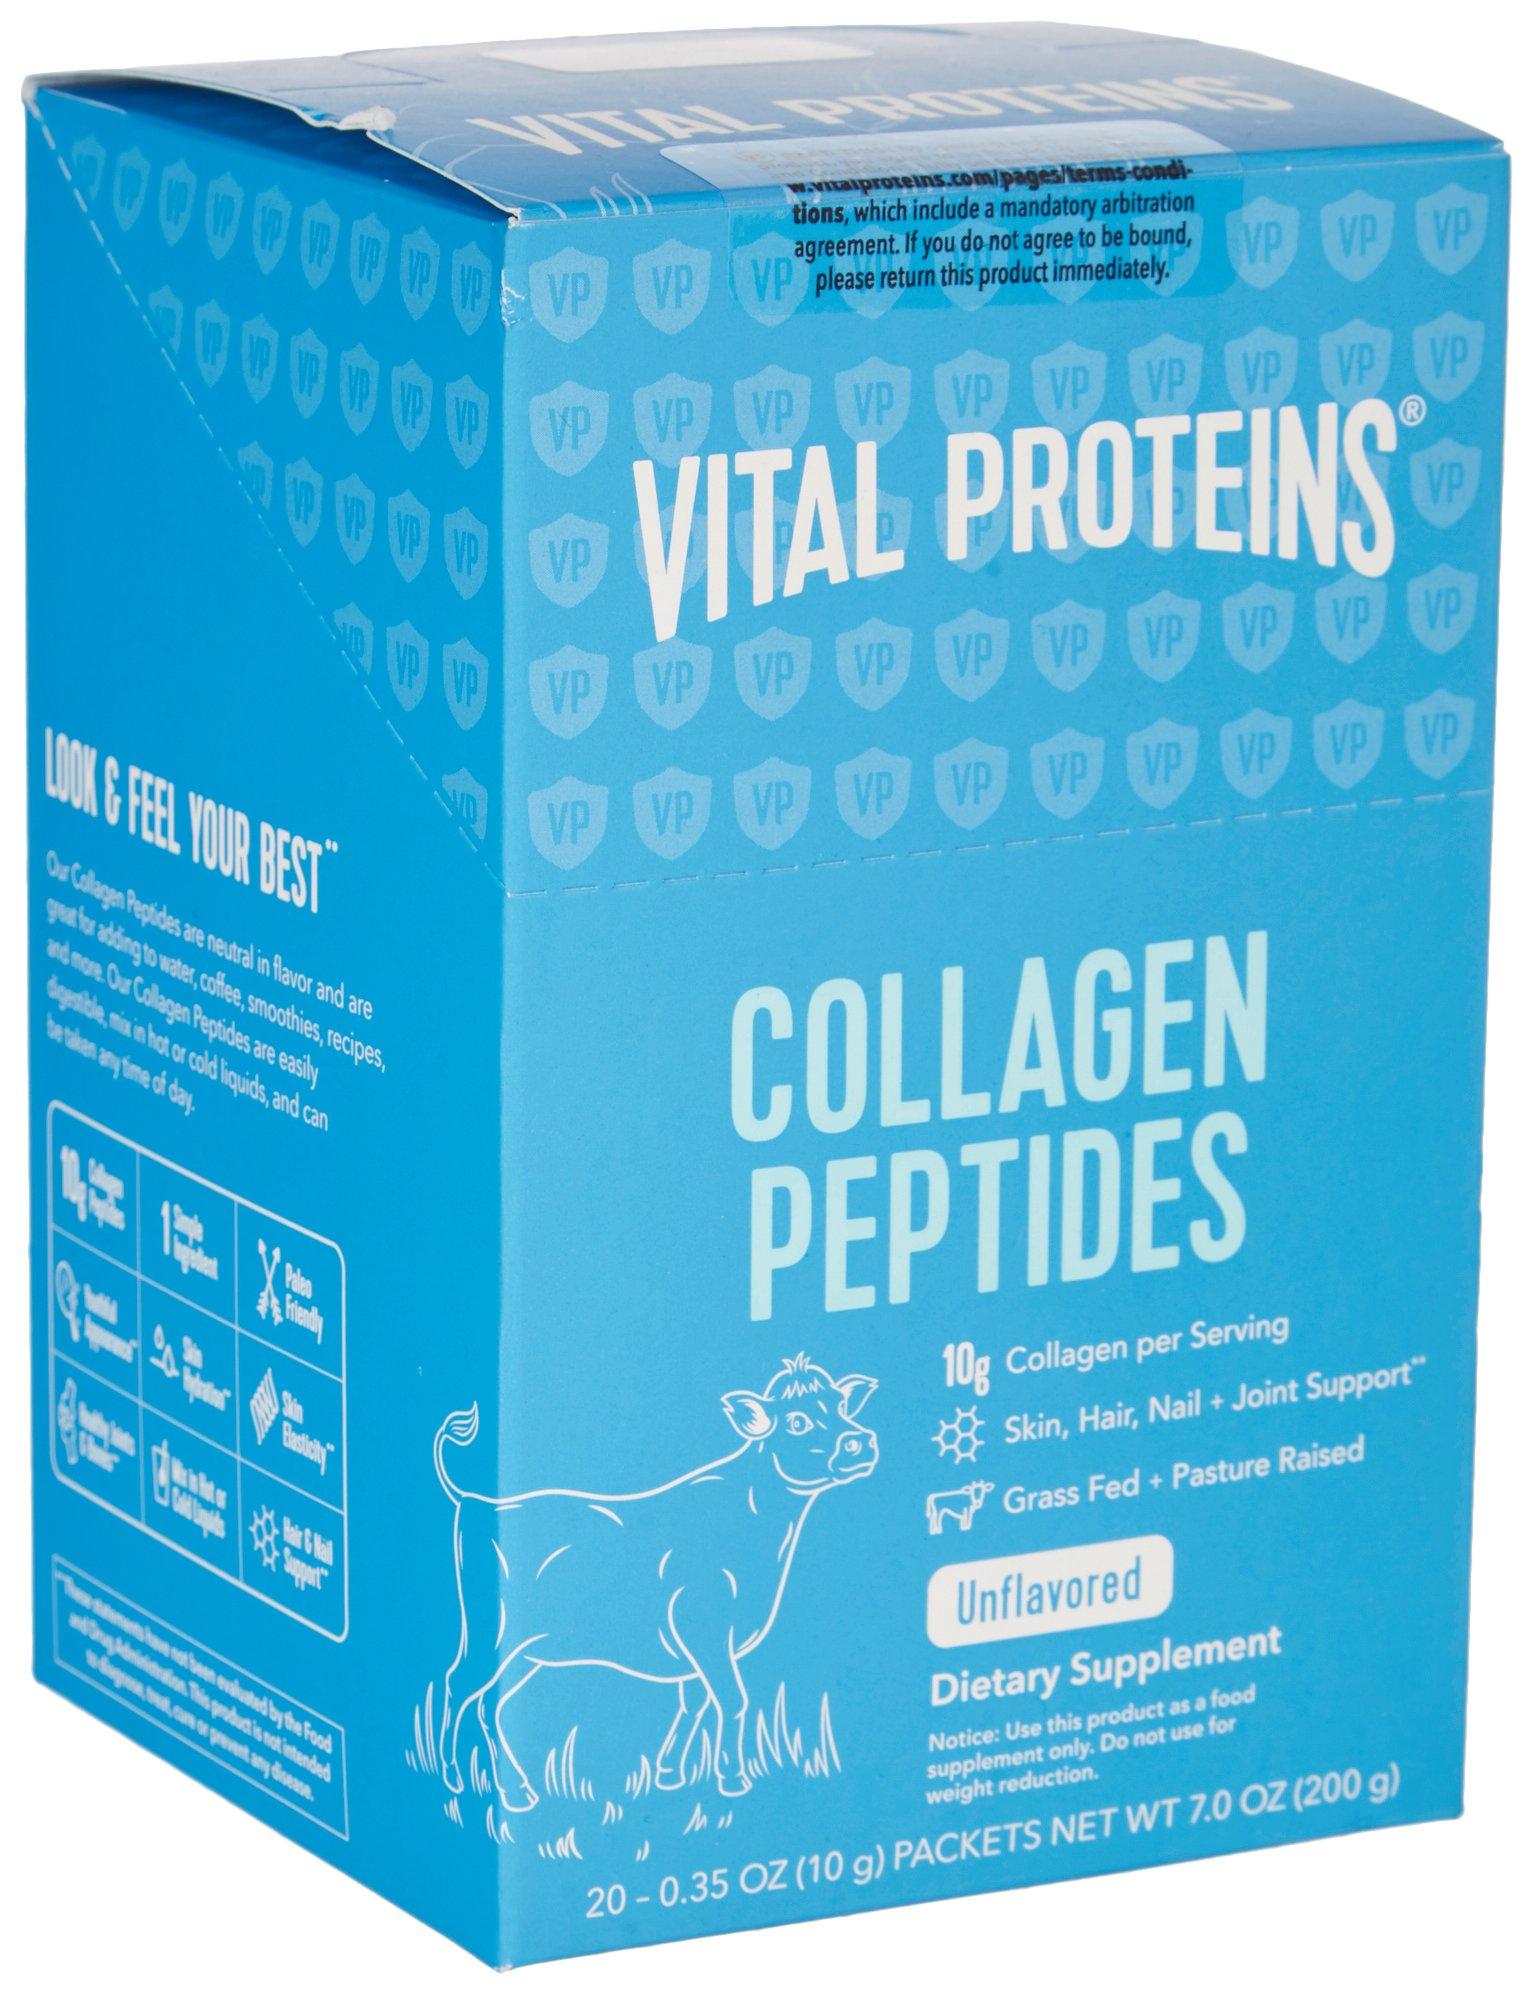 Vital Proteins Collagen Peptides Supplement